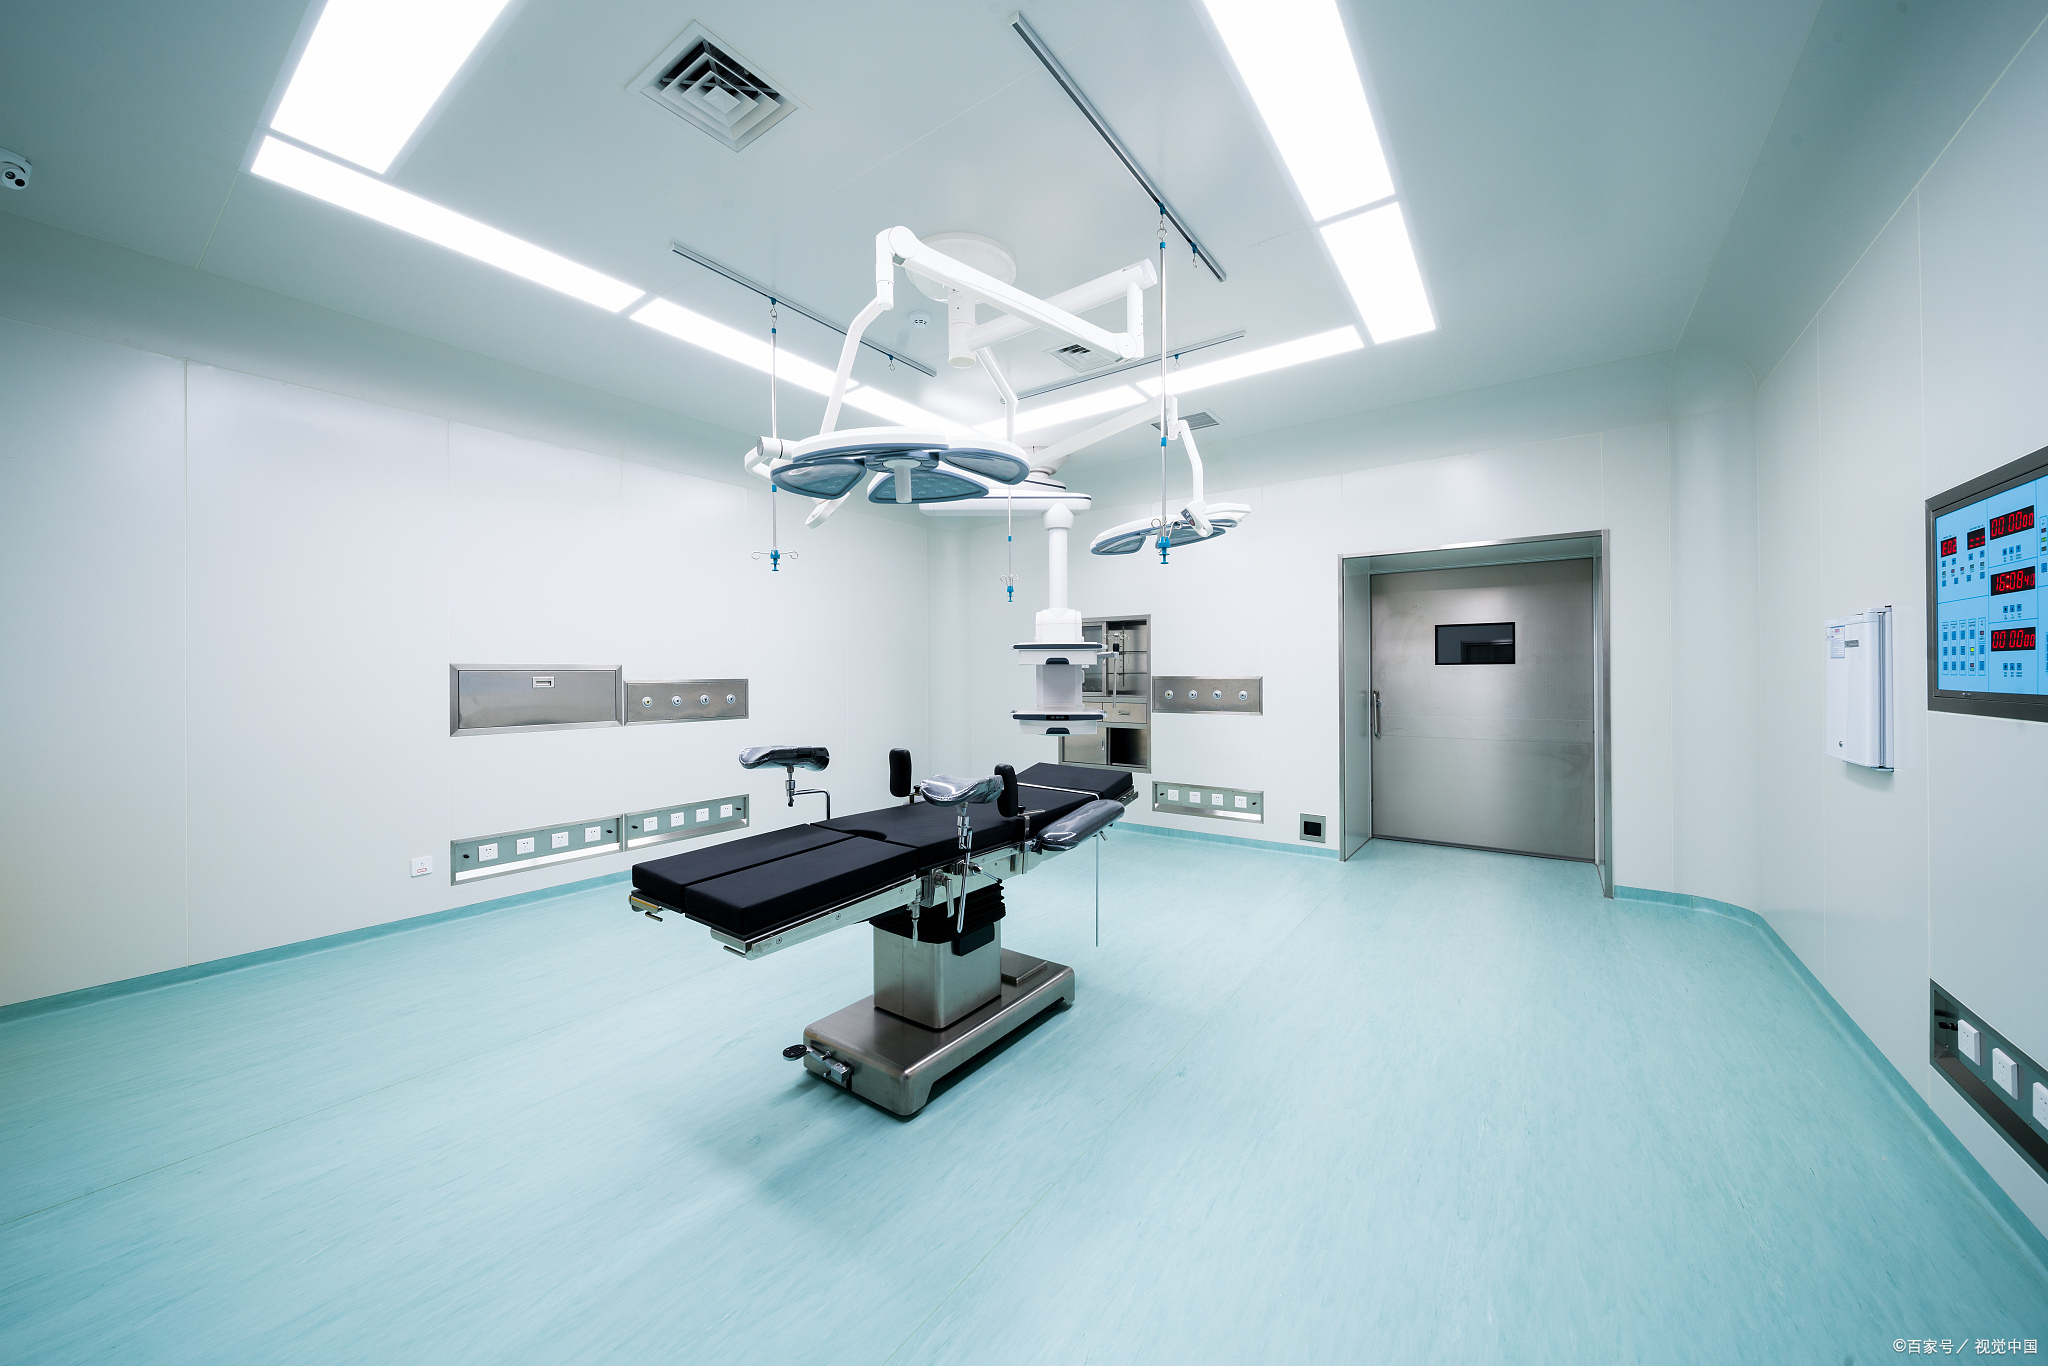 万级层流手术室与百级净化手术室有哪些具体区别缩略图